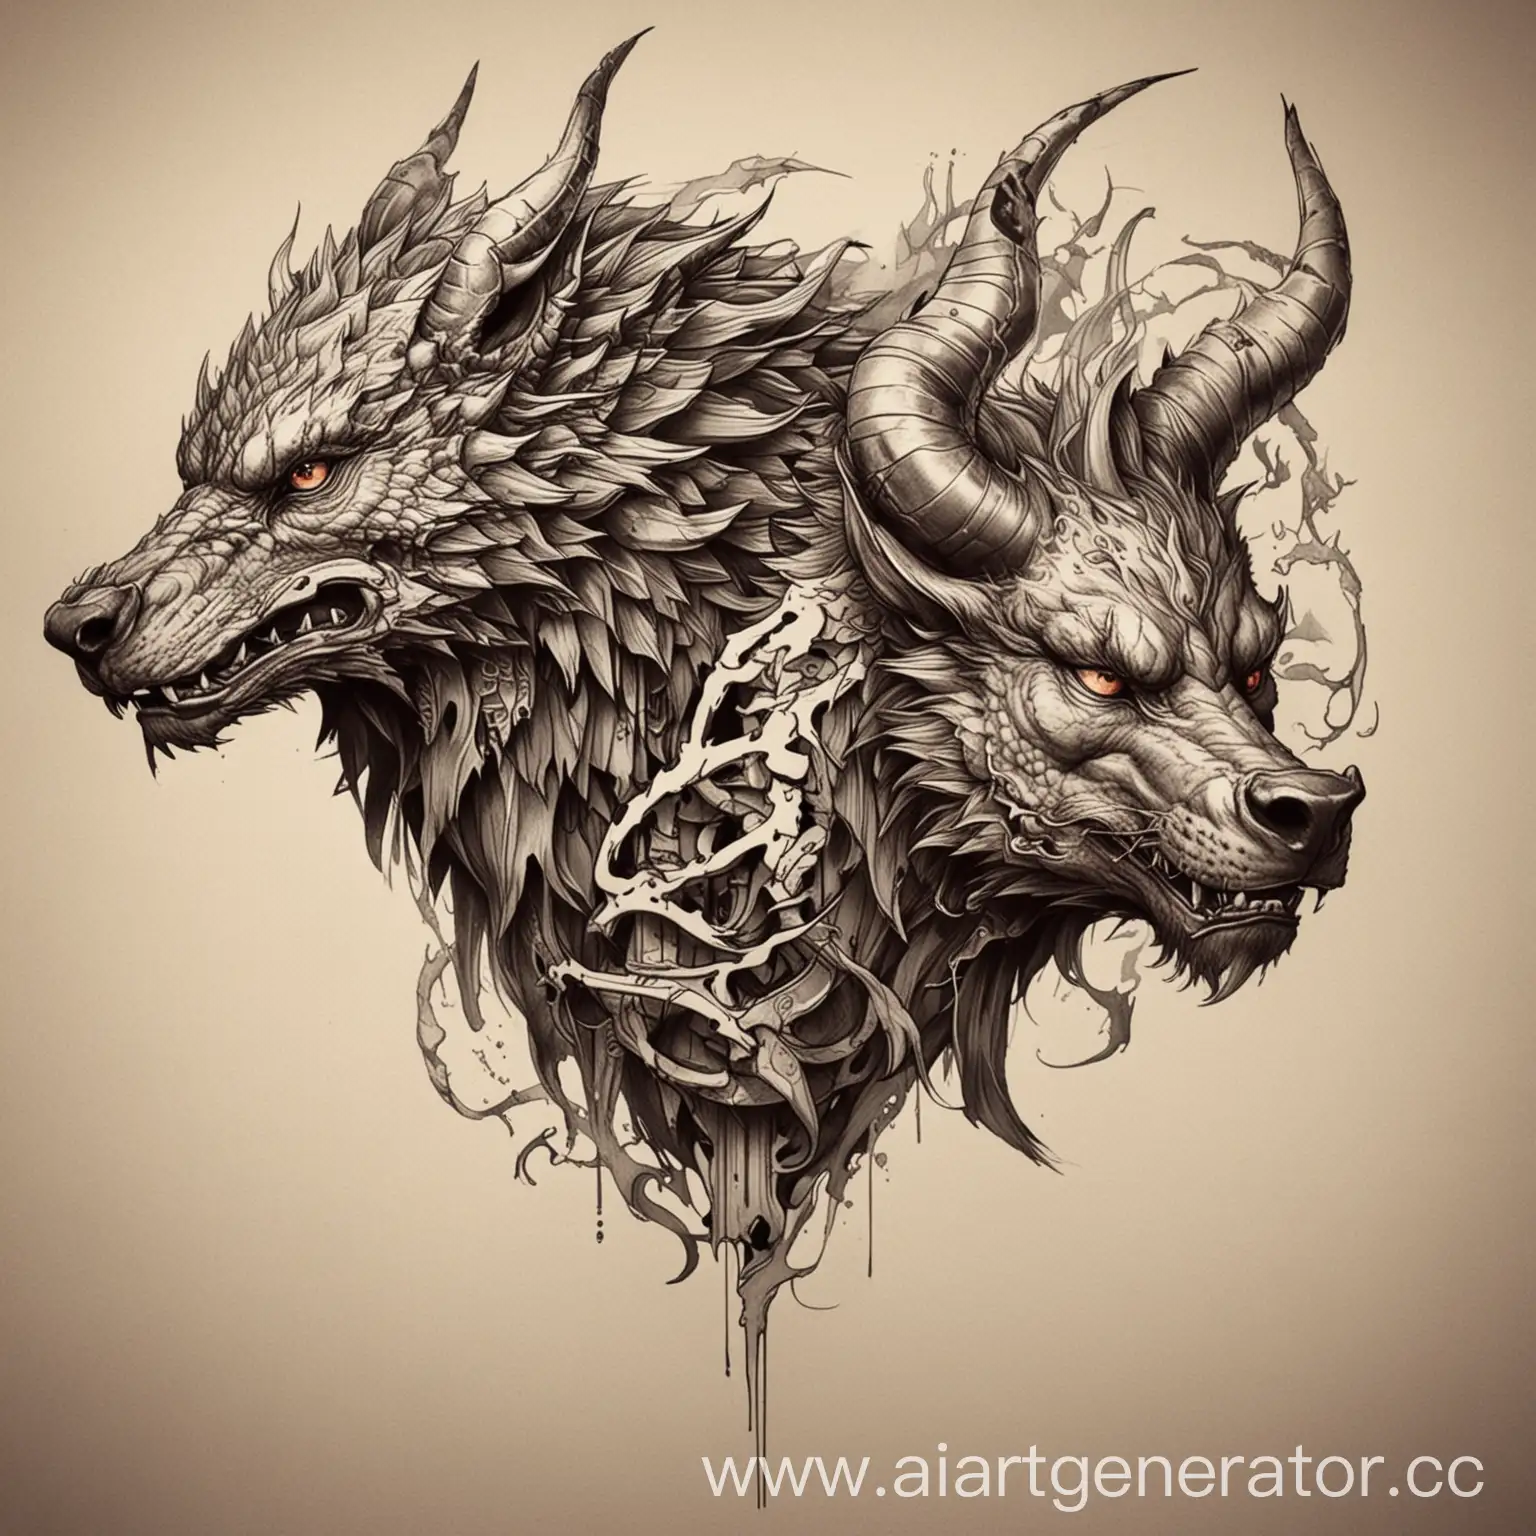 Объедени в одно Животное Дракона, Волка и быка. Это должен быть эскиз для татуировки